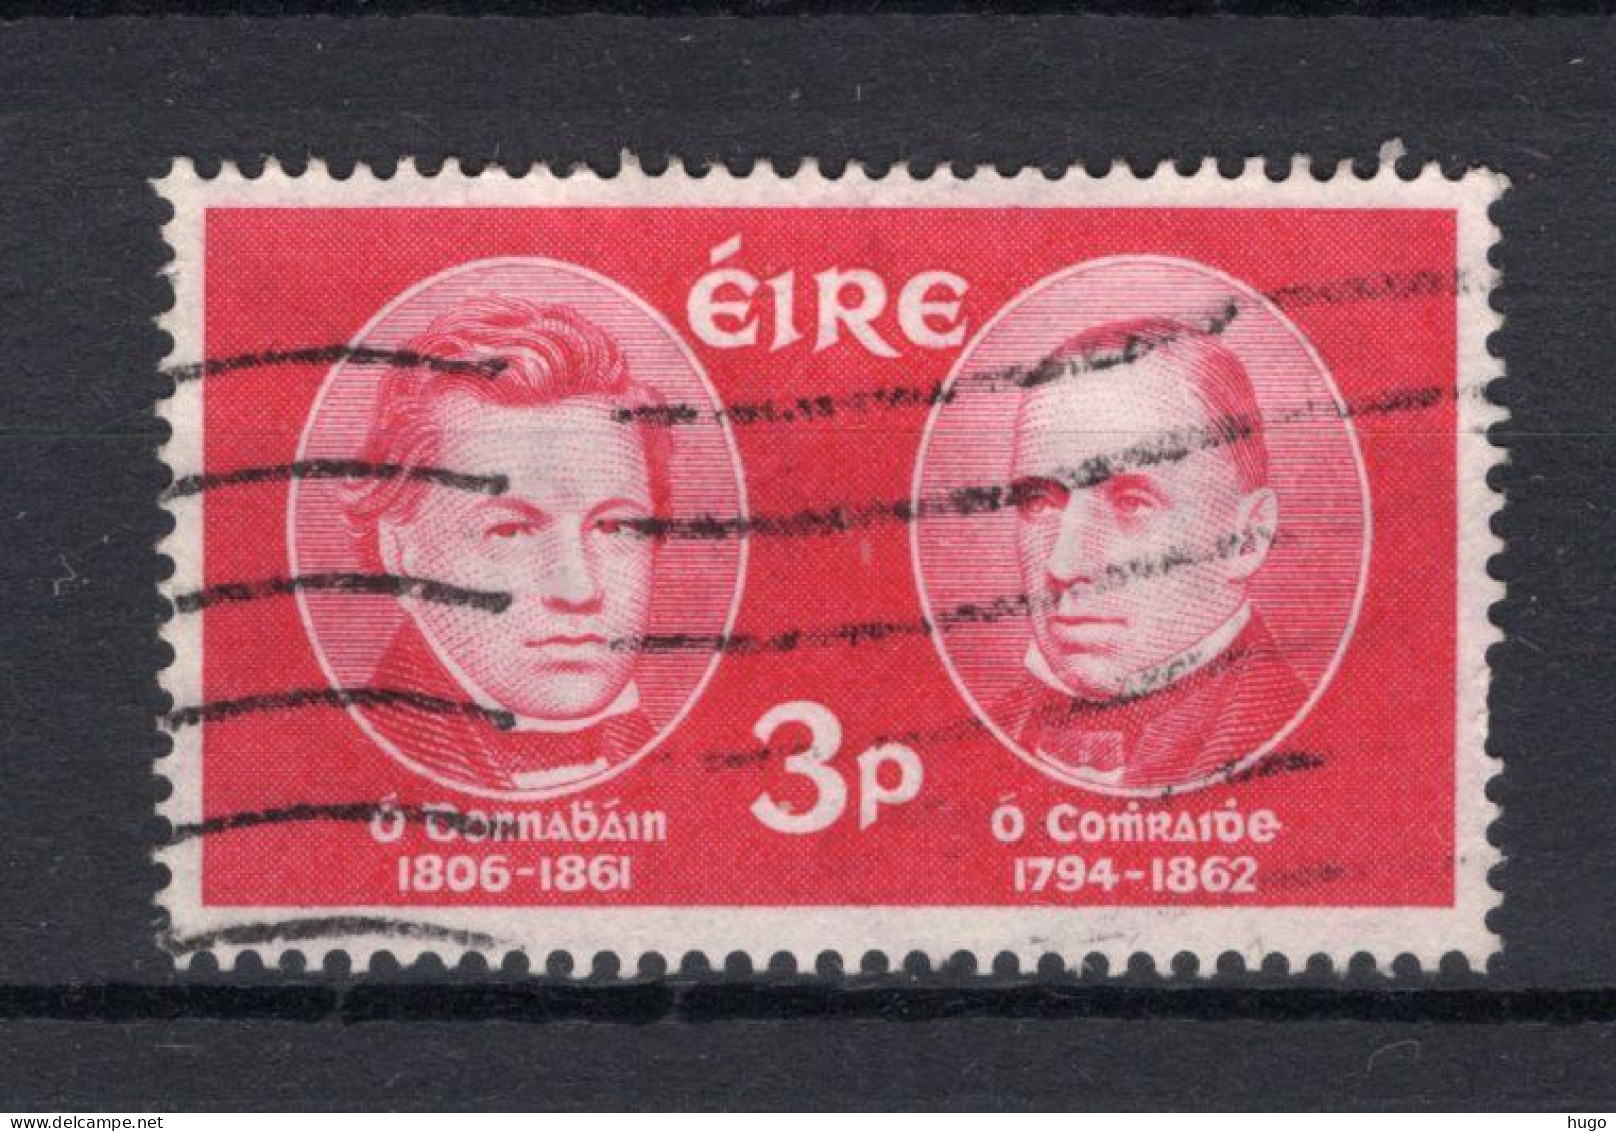 IERLAND Yt. 153° Gestempeld 1962 - Oblitérés